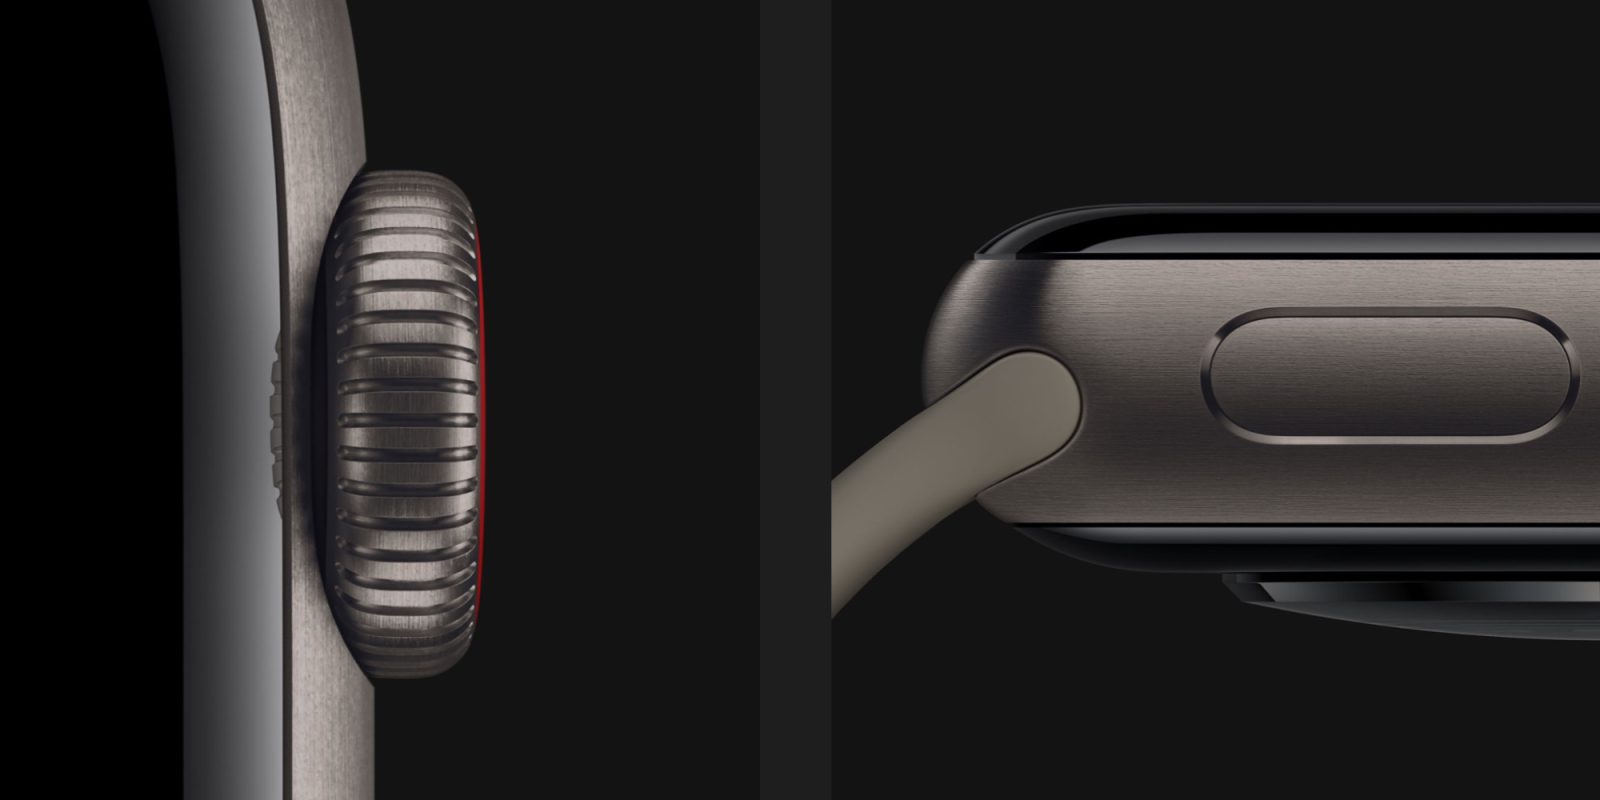 Apple Watch Series 5: Titanium vs stainless steel weight - 9to5Mac Apple Watch Titanium Vs Stainless Steel Reddit